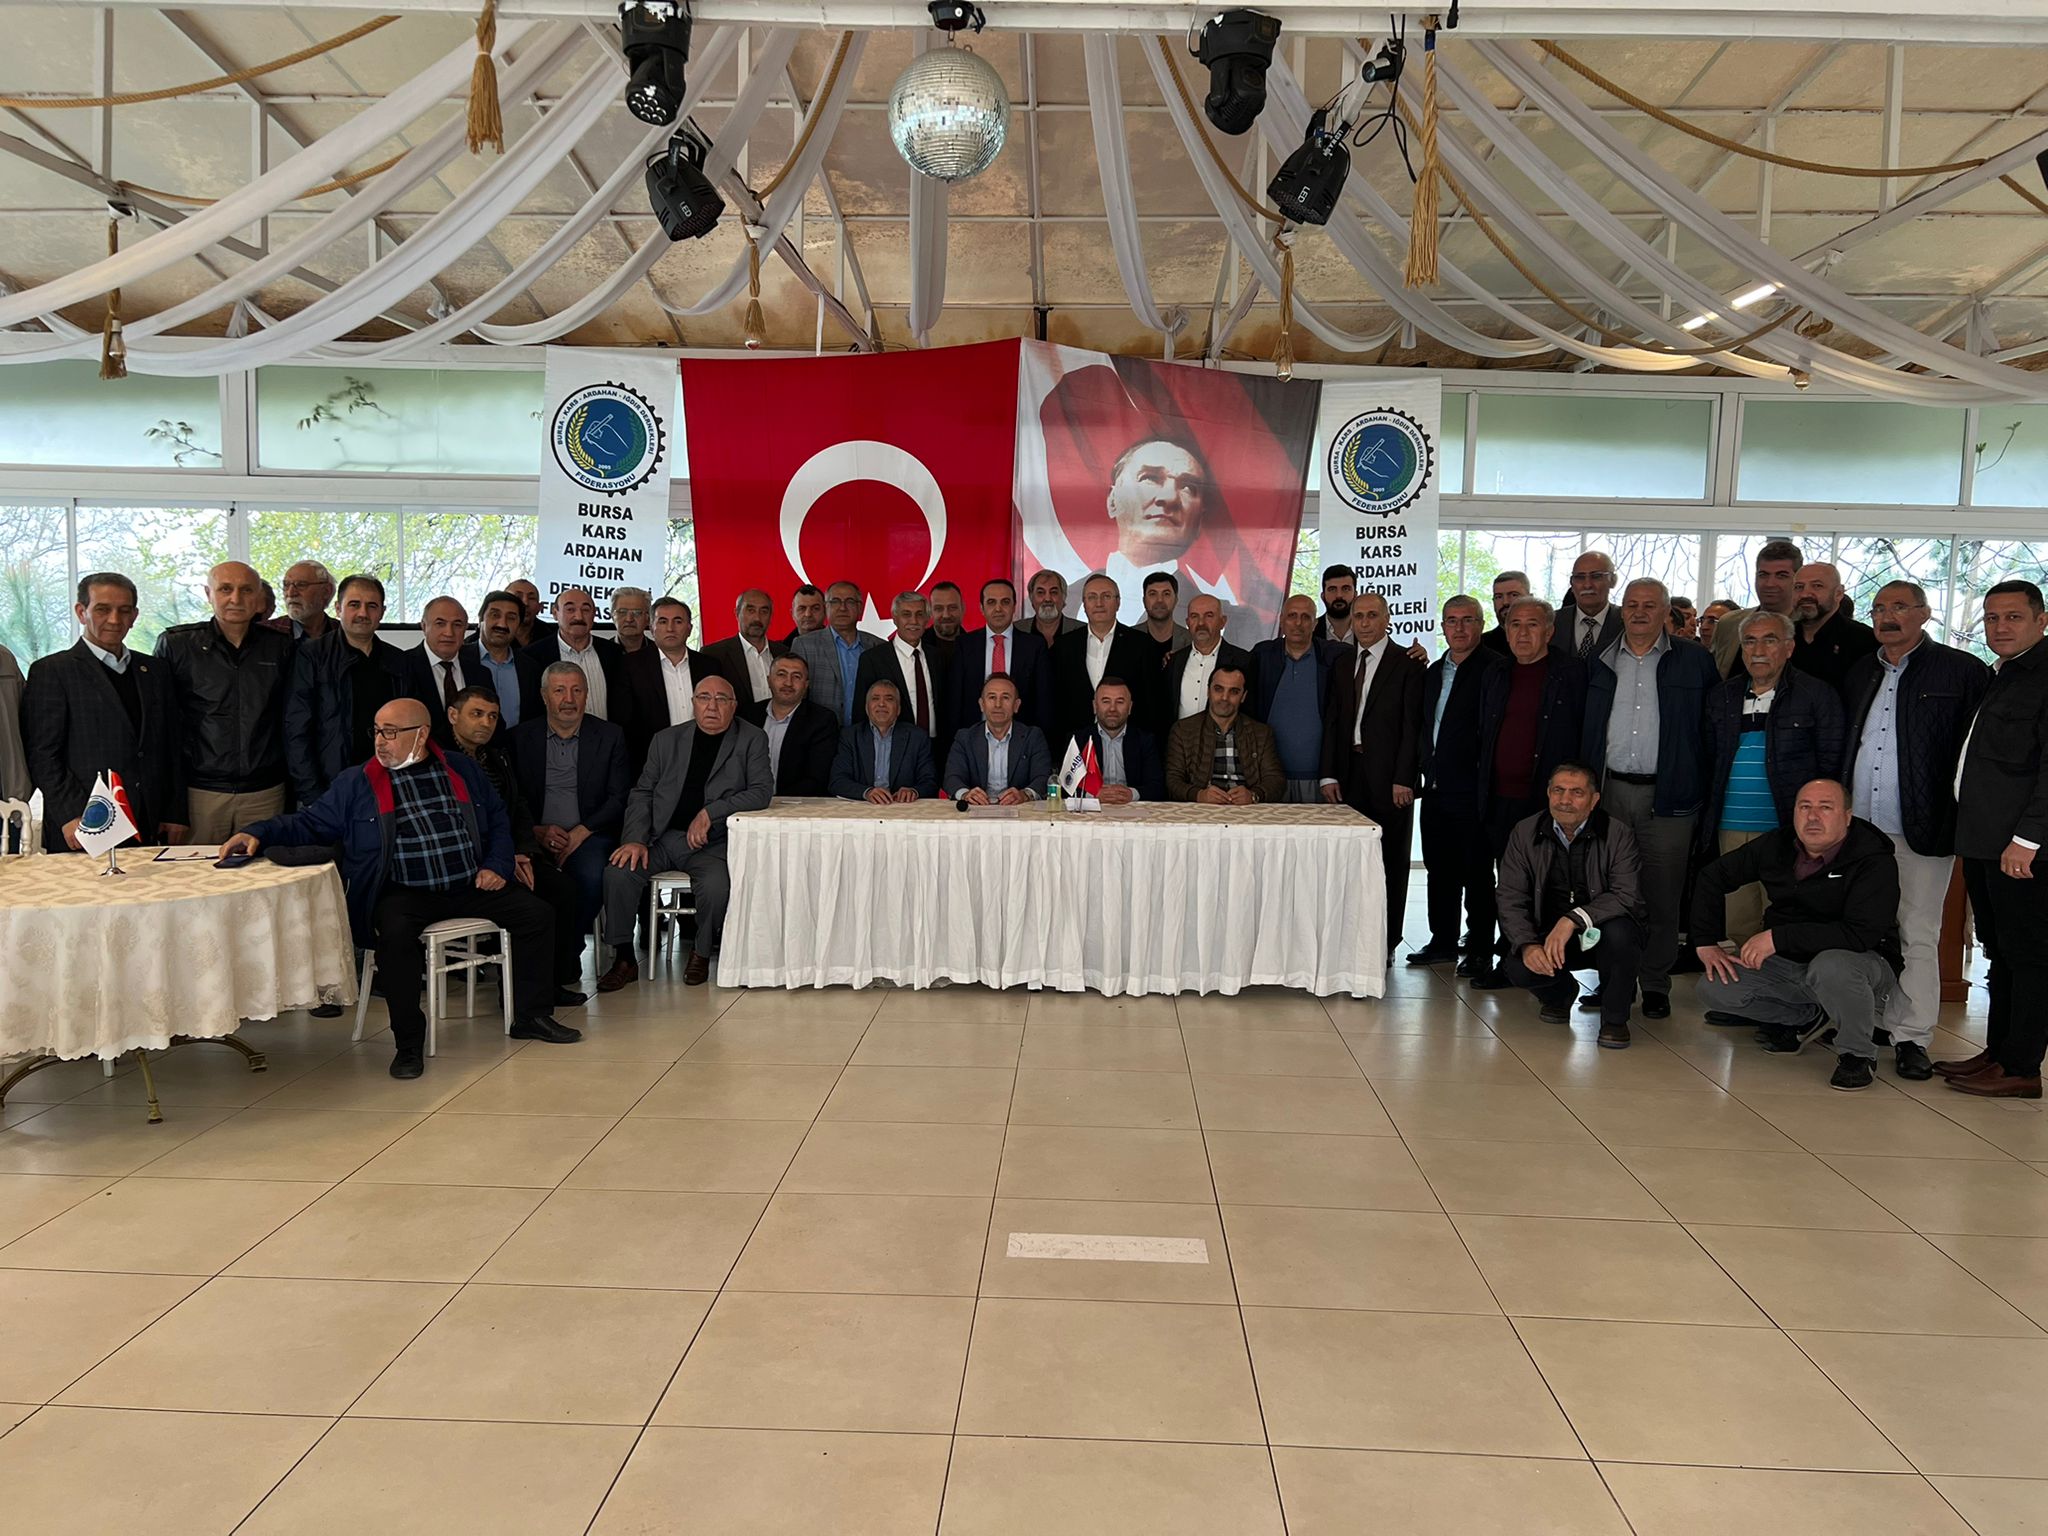 İl Başkanımız Bursa Kars Ardahan Iğdır Dernekleri Federasyonu Kongresine Katıldı